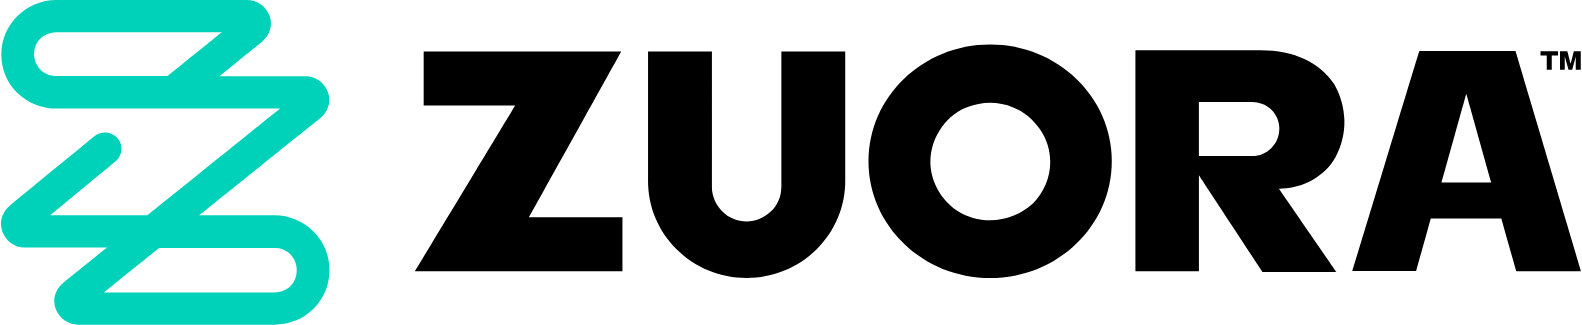 Zuora logo large (transparent PNG)